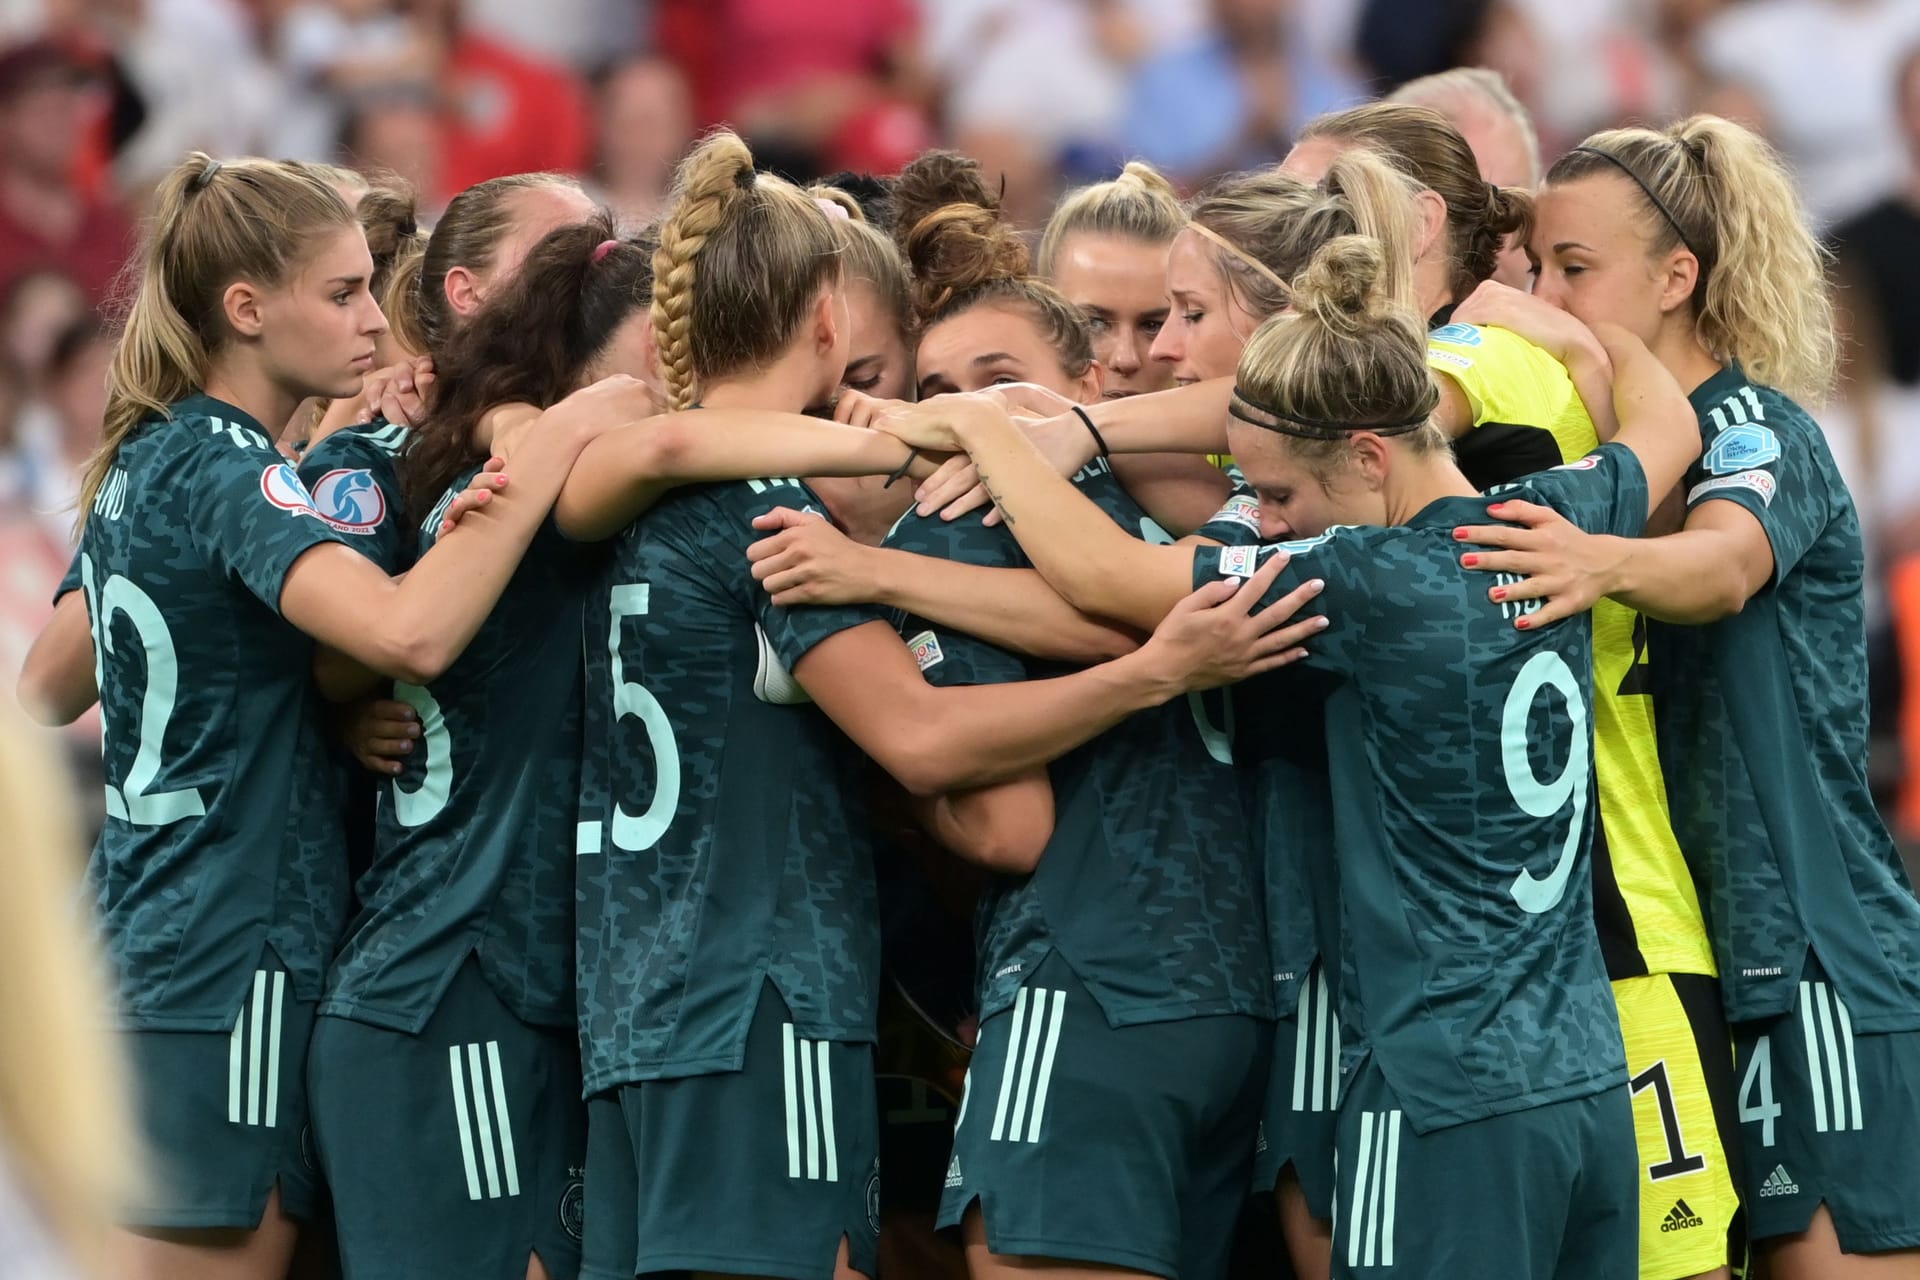 Finale der Frauen-EM: Deutschland verliert das Endspiel in und gegen England in der Nachspielzeit mit 1:2. Während vorne die Effizienz fehlte, konnte die Abwehrkette nicht alles verhindern. Die Einzelkritik.